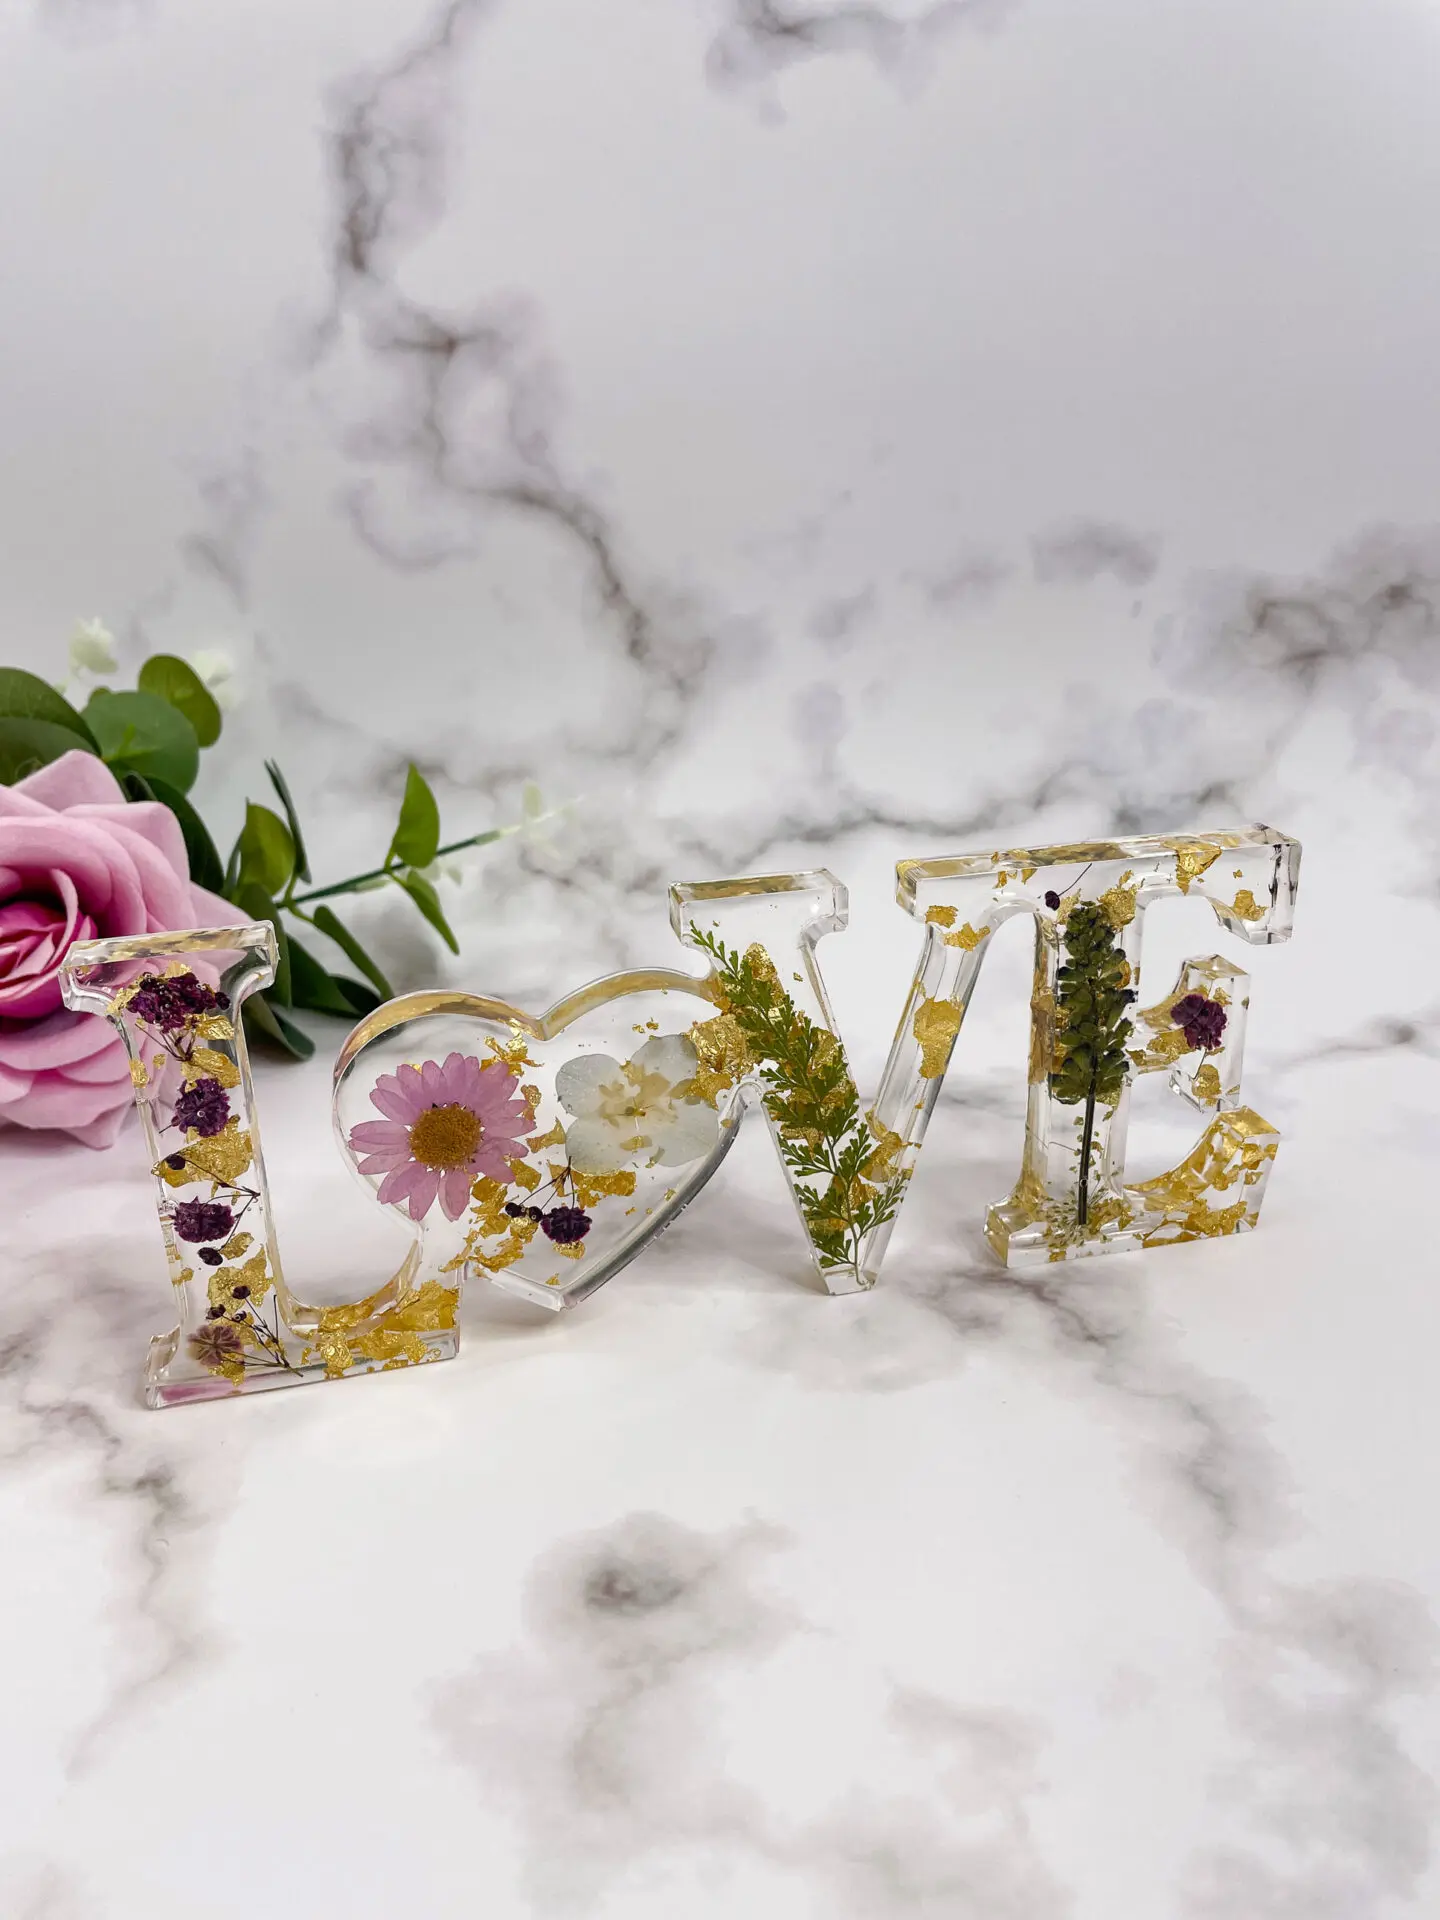 Mot décoratifs en résine - Love - fleurs rose - idées cadeaux pour la saint valentin - boutique idées cadeaux - boutique en ligne - création française et artisanale.